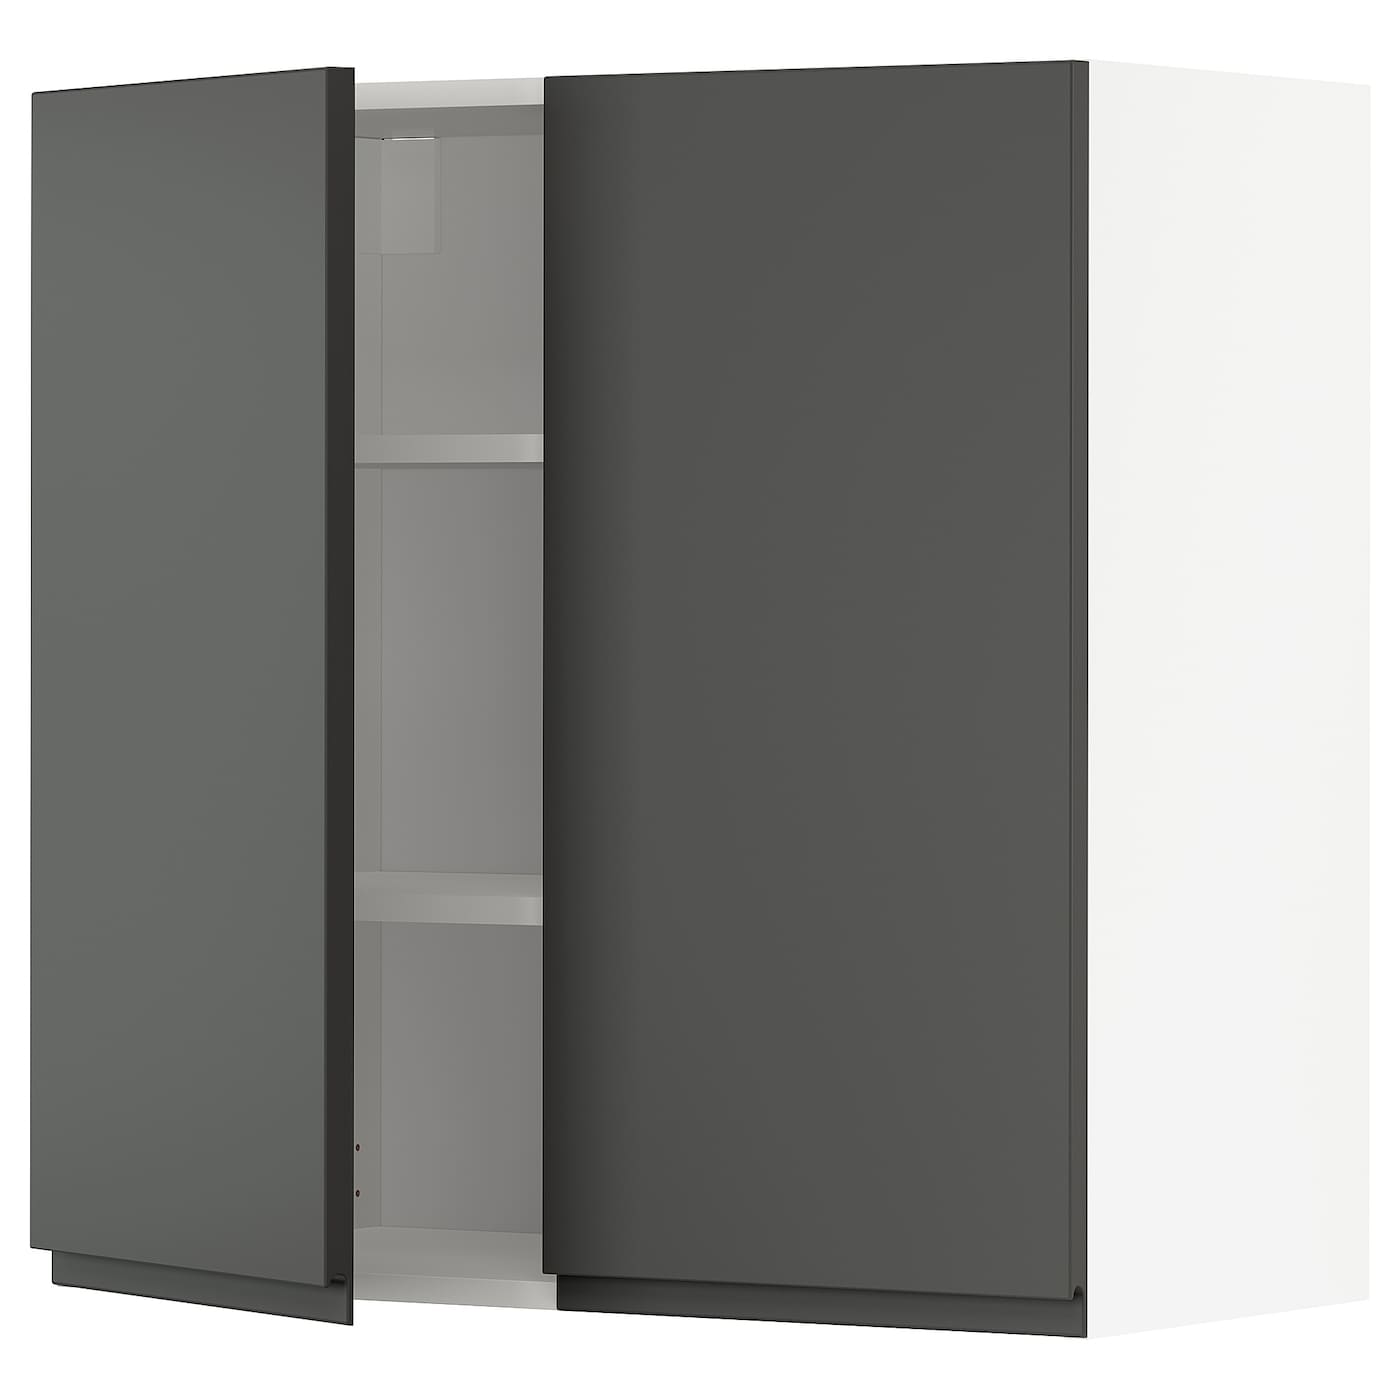 Навесной шкаф с полкой - METOD IKEA/ МЕТОД ИКЕА, 80х80 см, белый/темно-серый